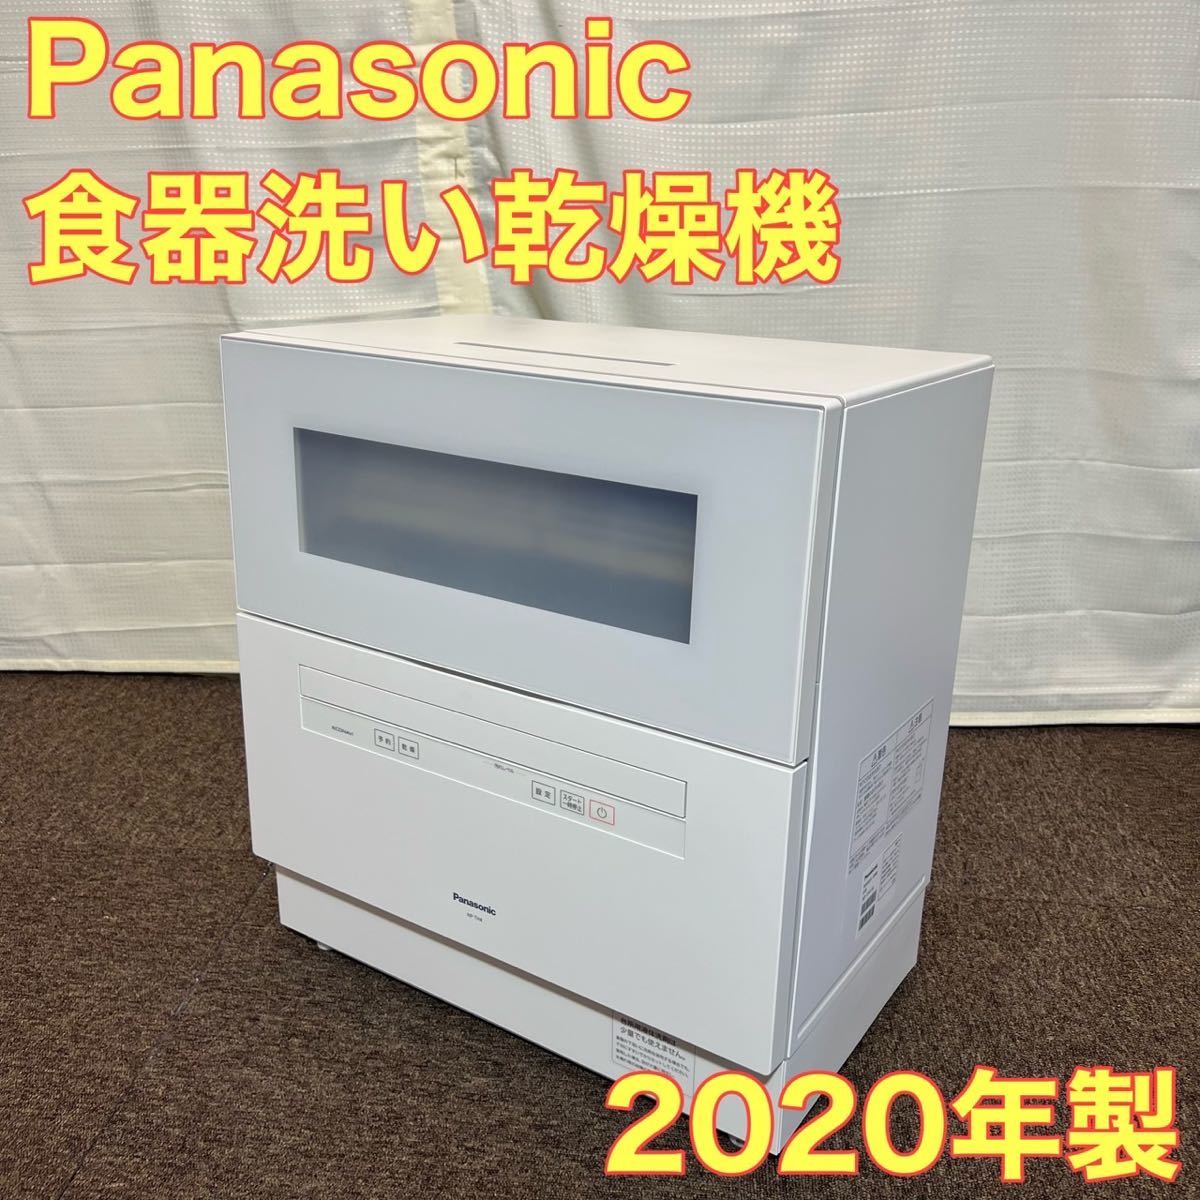 品質保証 Panasonic 食洗機 食器洗い乾燥機 高年式 2020年製 A0233 ...